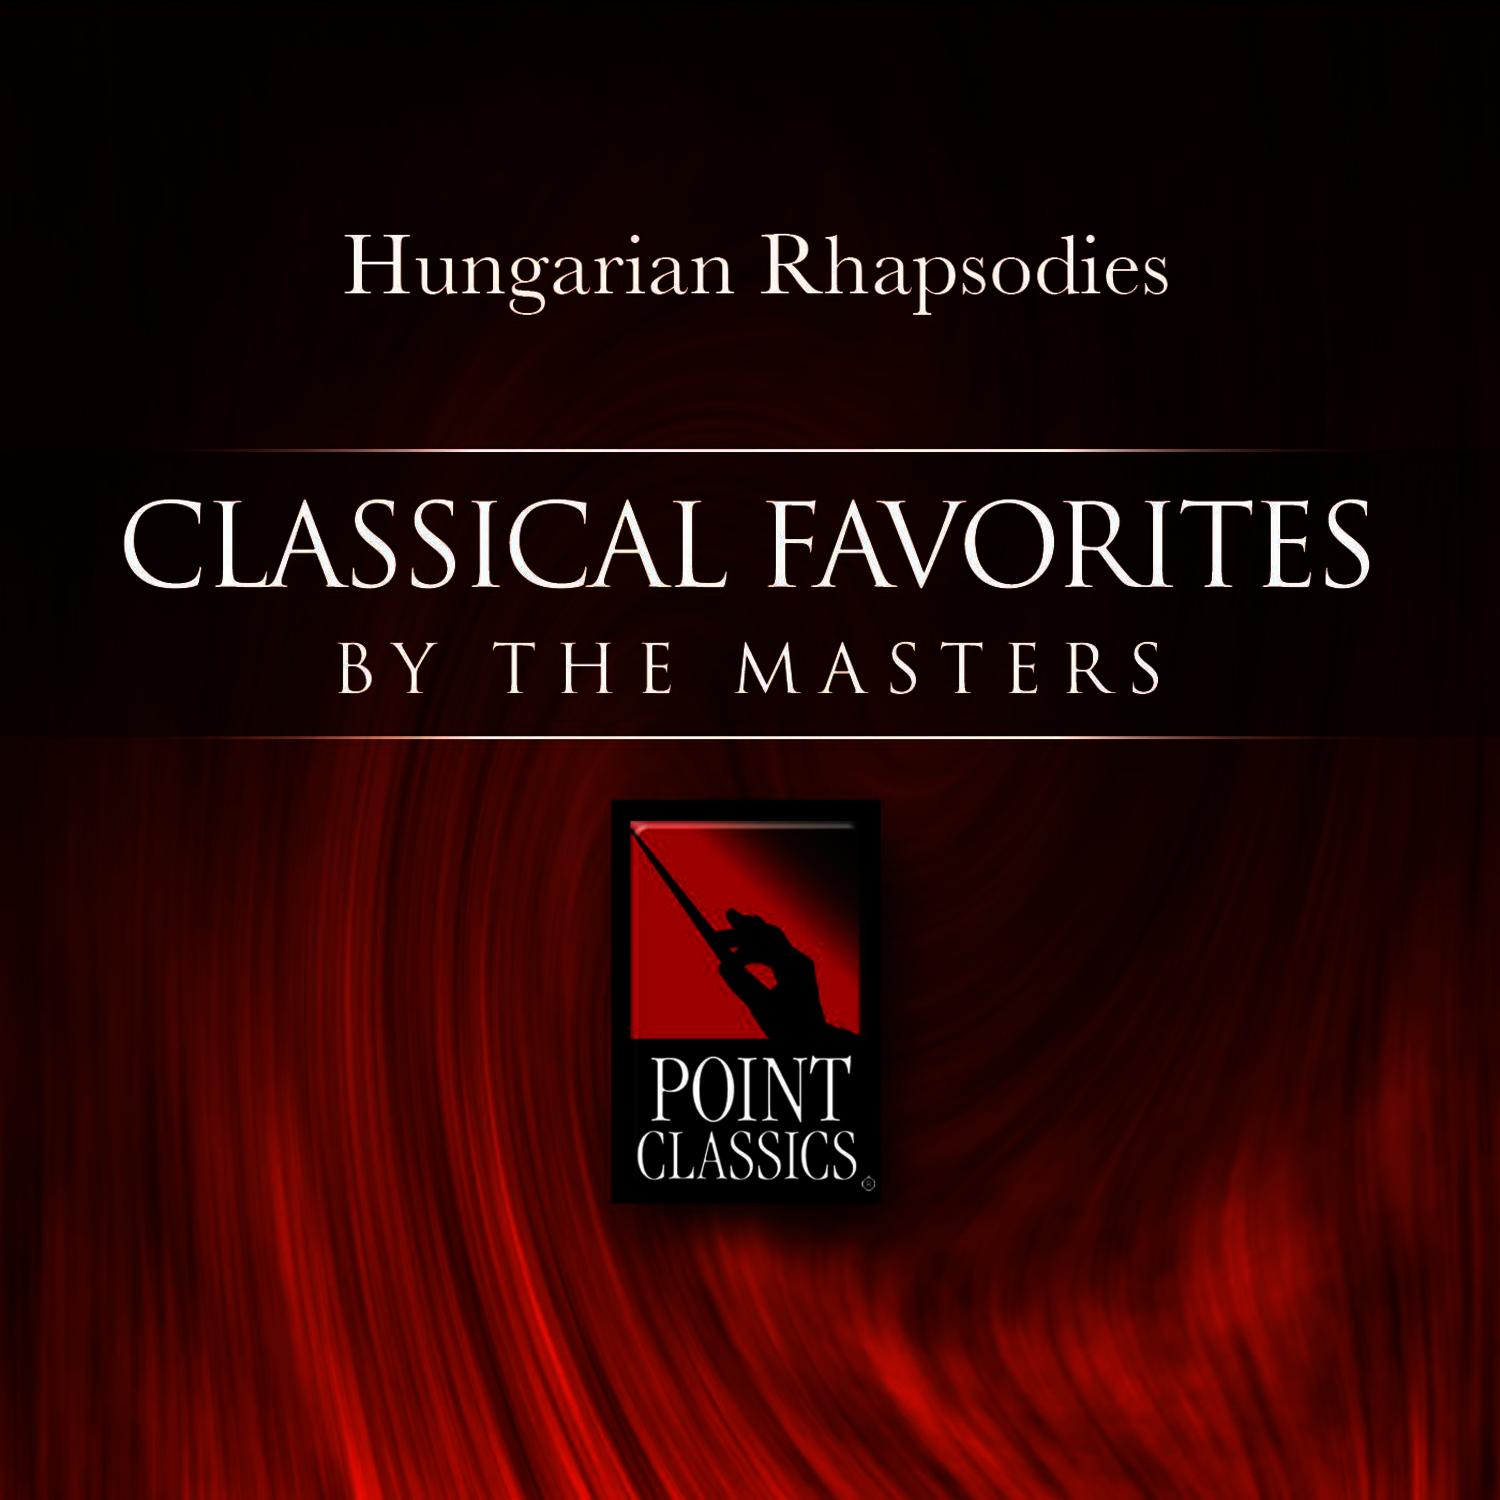 Hungarian Rhapsody No. 1 in C sharp minor